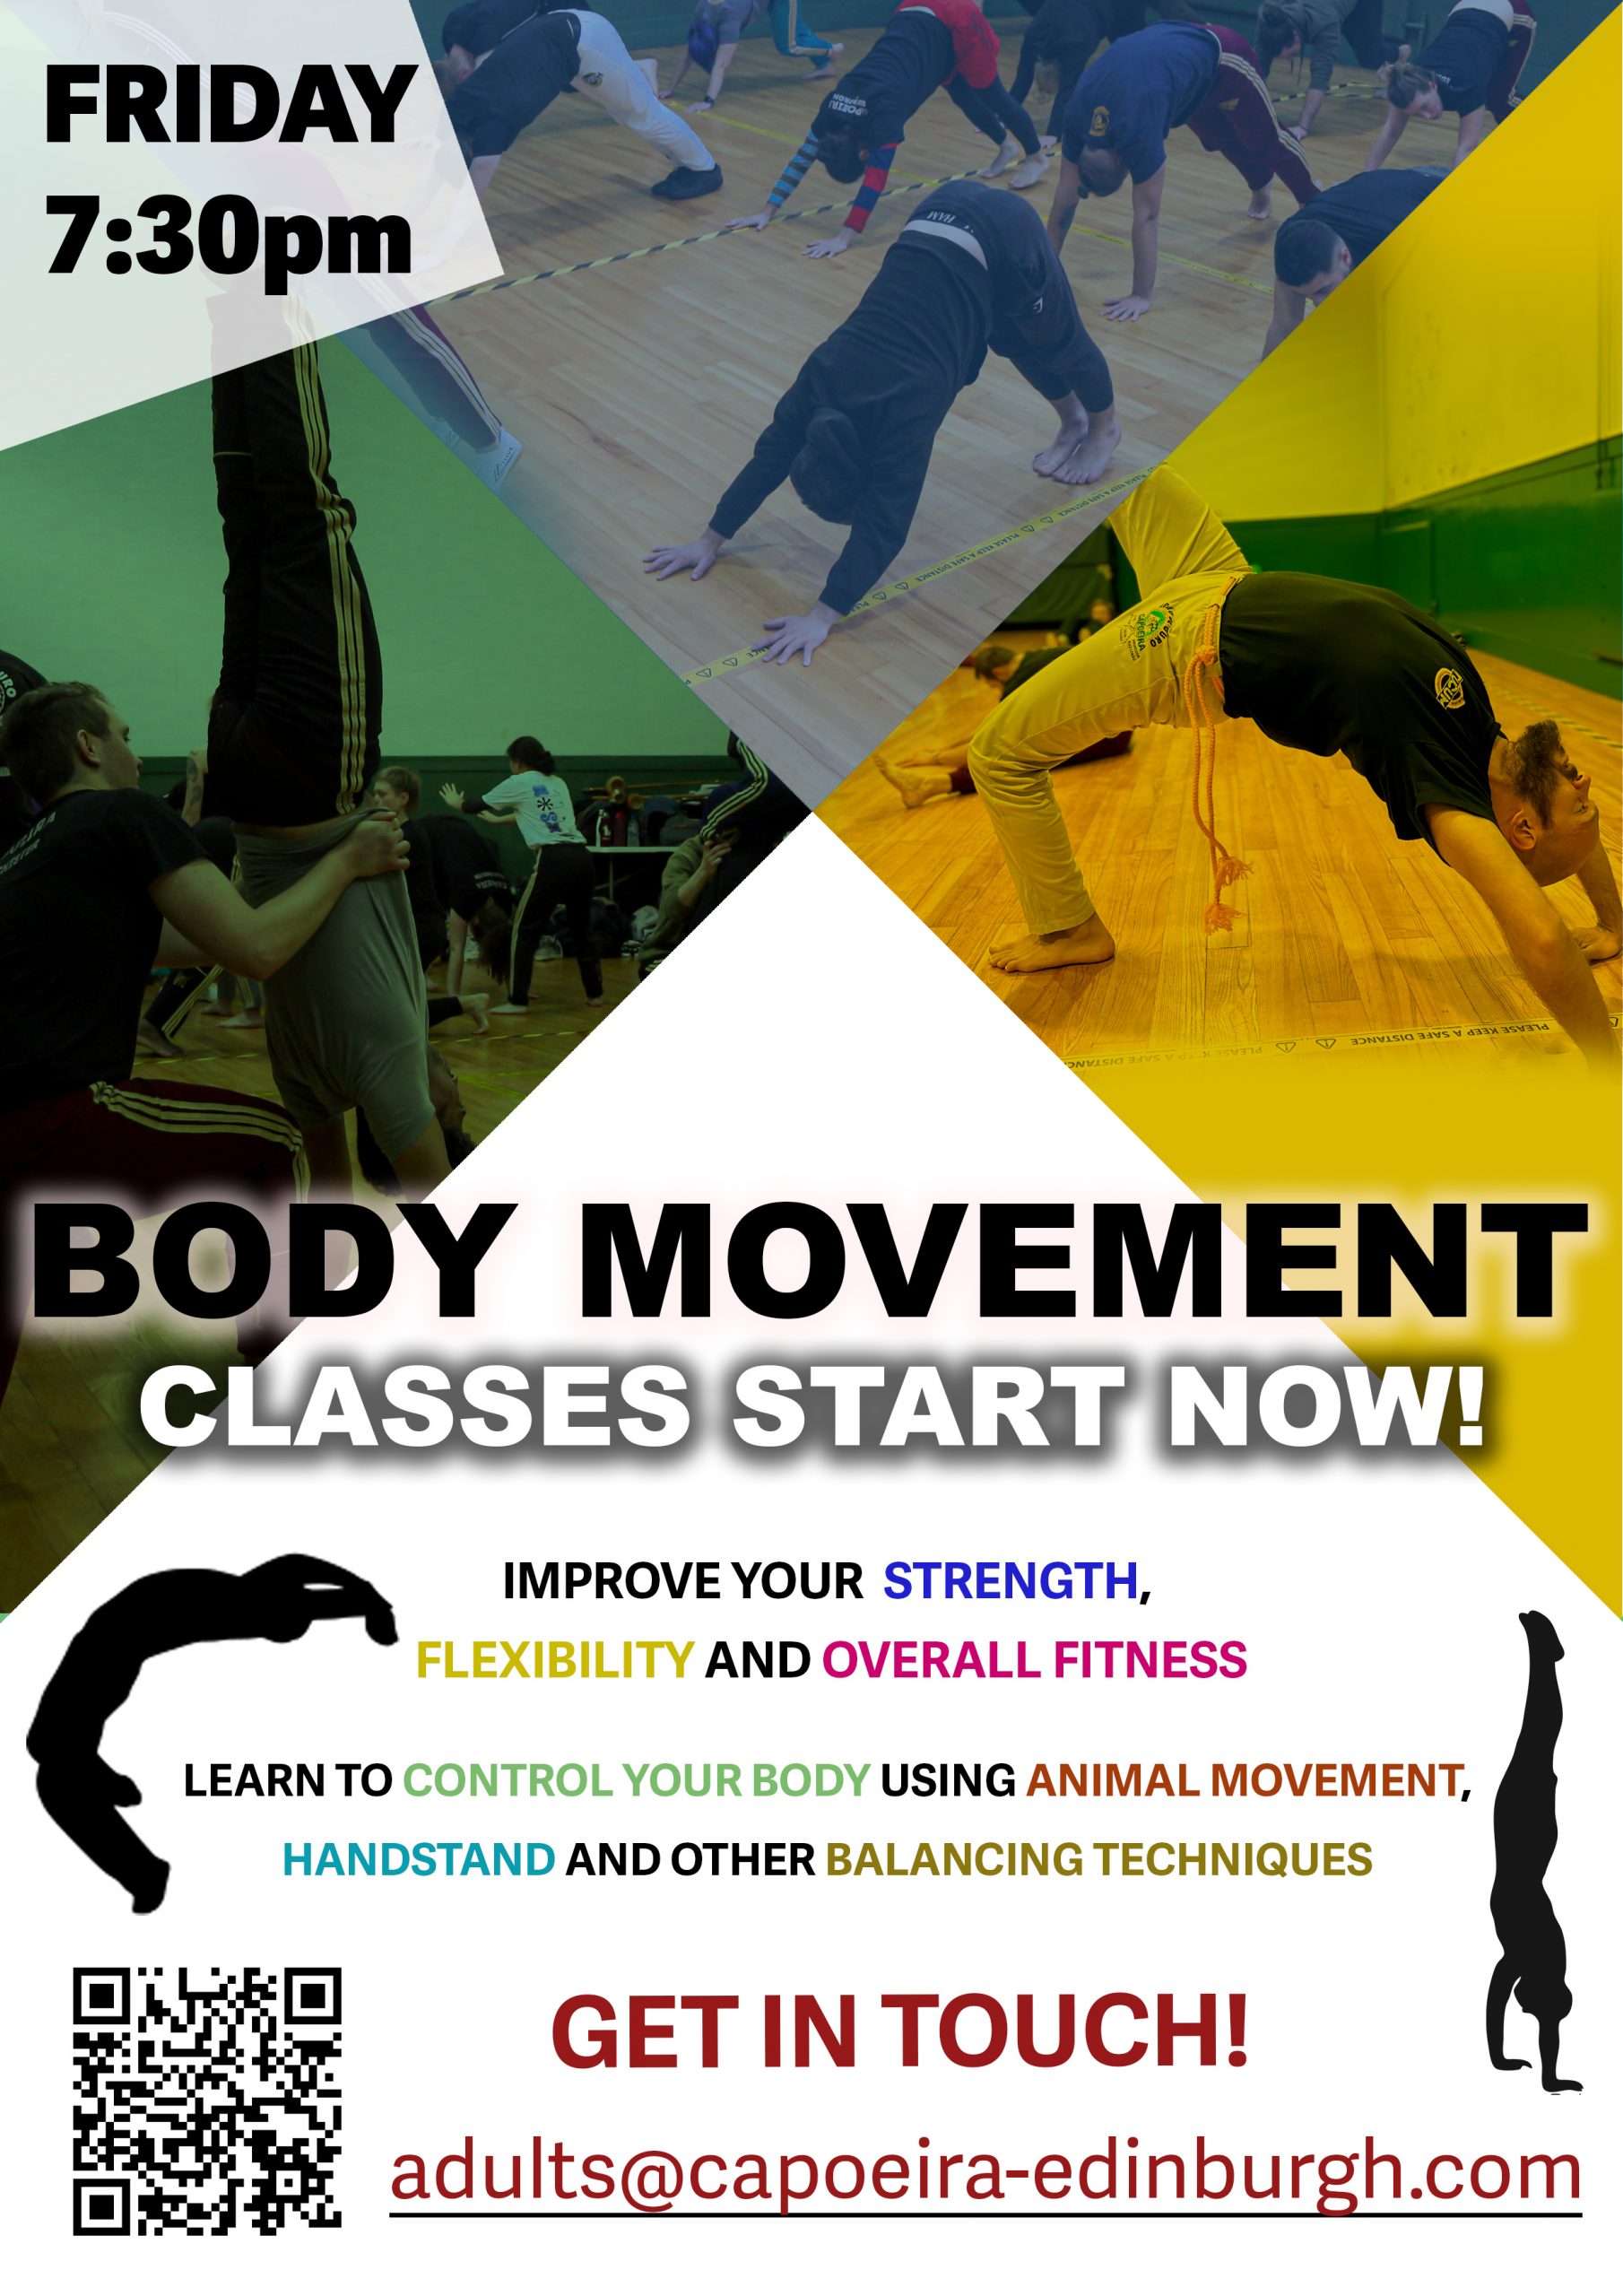 Capoeira Body movement classes